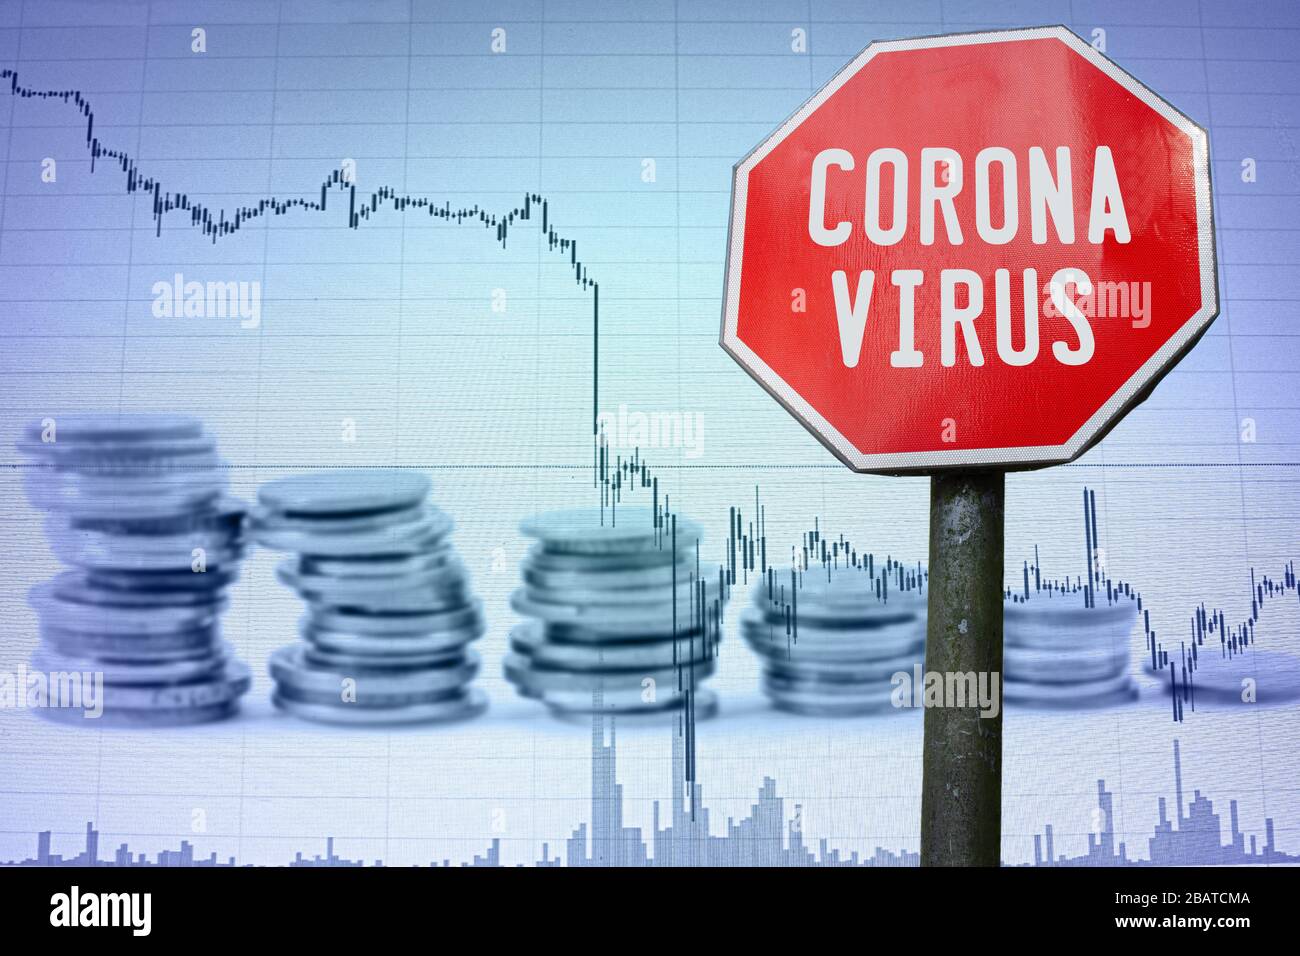 Corona-Virus-Zeichen auf dem wirtschaftlichen Hintergrund - Diagramm und Münzen. Finanzunfall in der Weltwirtschaft wegen Coronavirus. Weltwirtschaftskrise, Rezession. Stockfoto